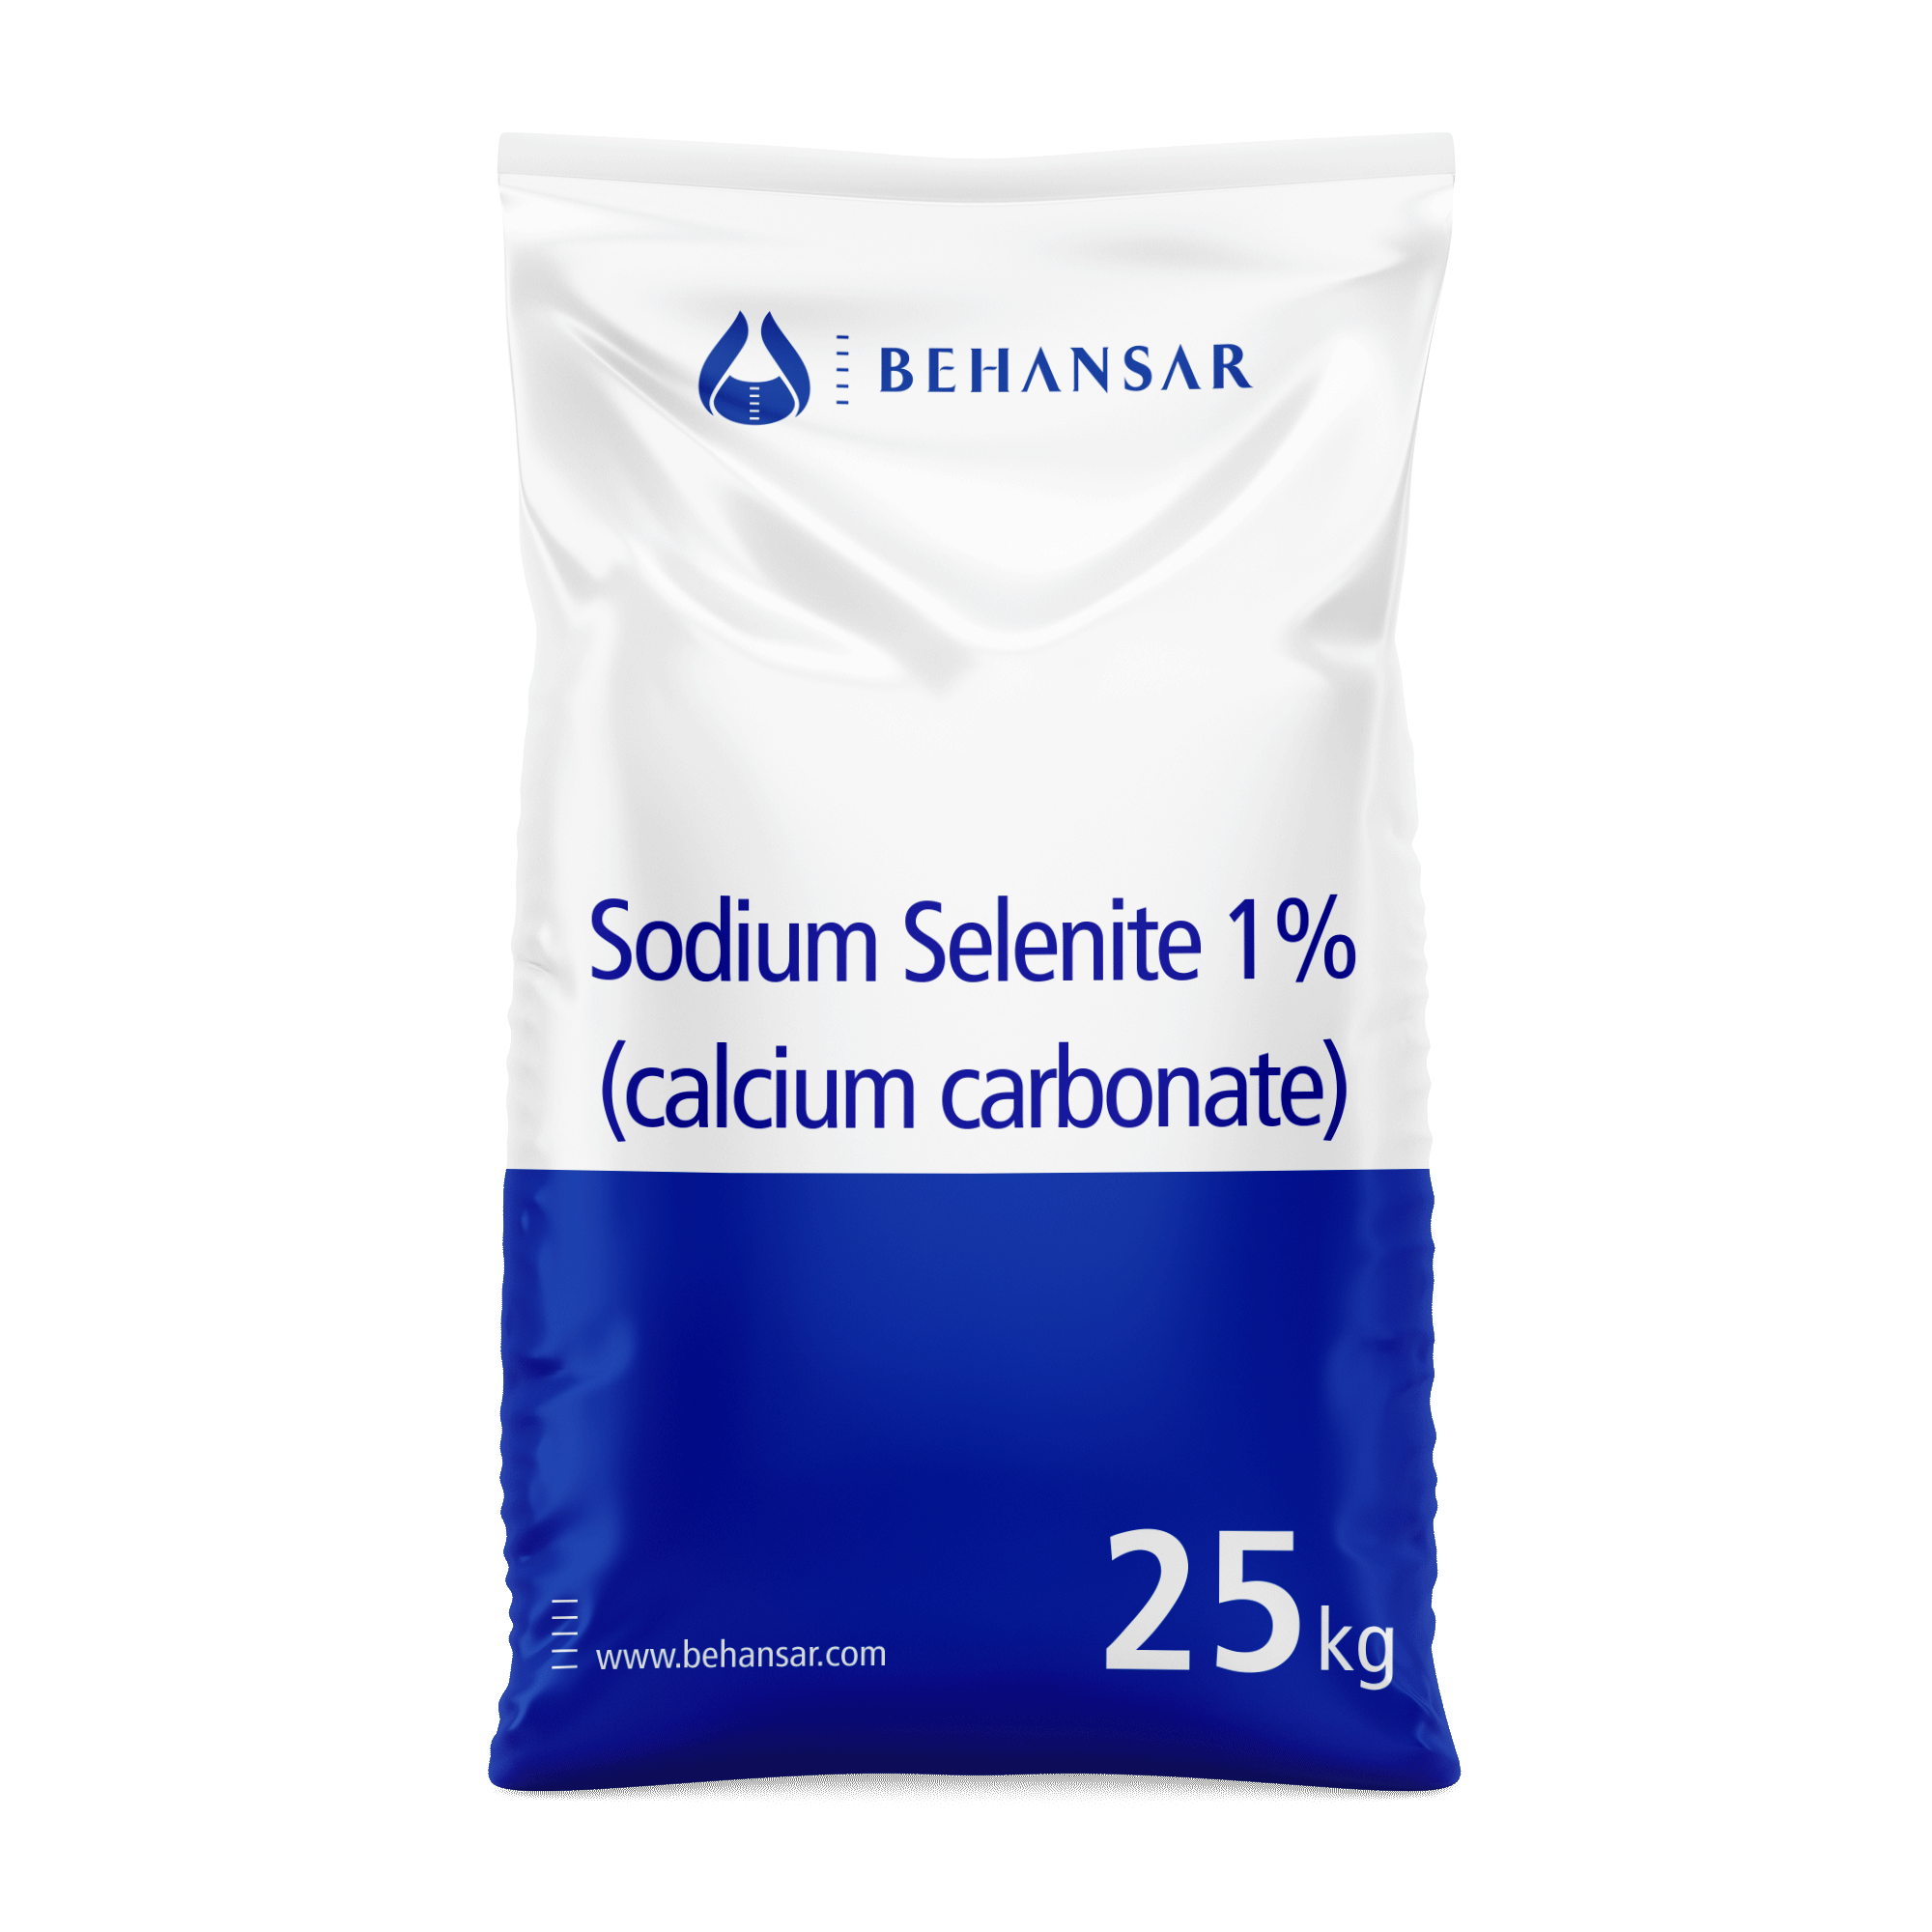 سدیم سلنیت 1% + کلسیم کربنات یکی از تولیدات شرکت بهانسار است